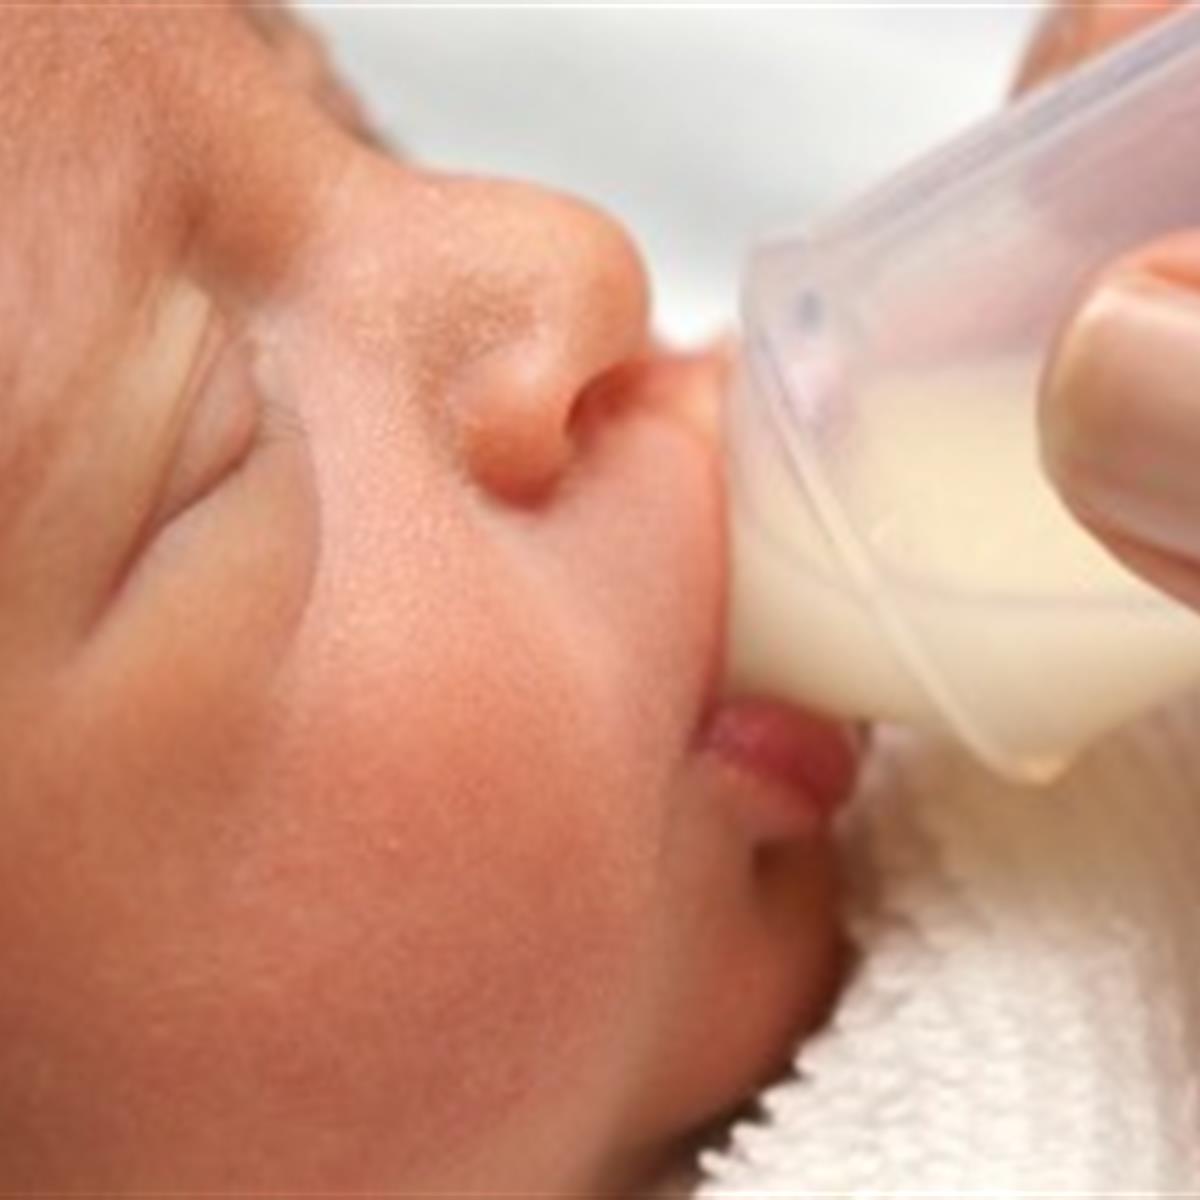 Leche bebé: qué es y en qué casos usarla - Paco Perfumerías Blog